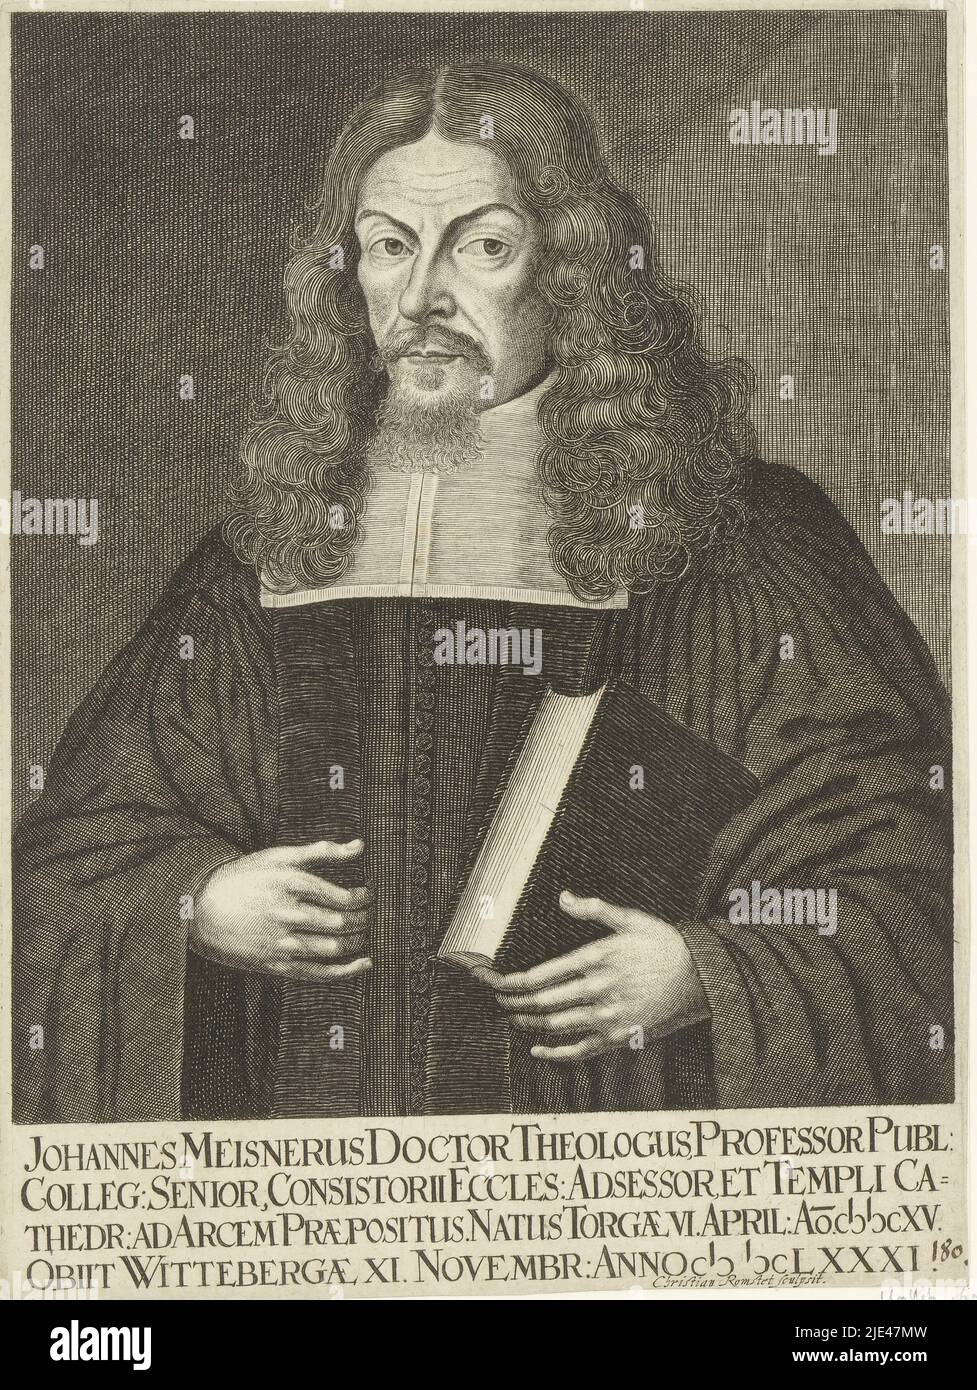 Porträt von Johannes Meisner, Christian Romstet, 1665 - 1721, Druckerei: Christian Romstet, (auf Objekt erwähnt), 1665 - 1721, Papier, Gravur, H 226 mm - B 170 mm Stockfoto